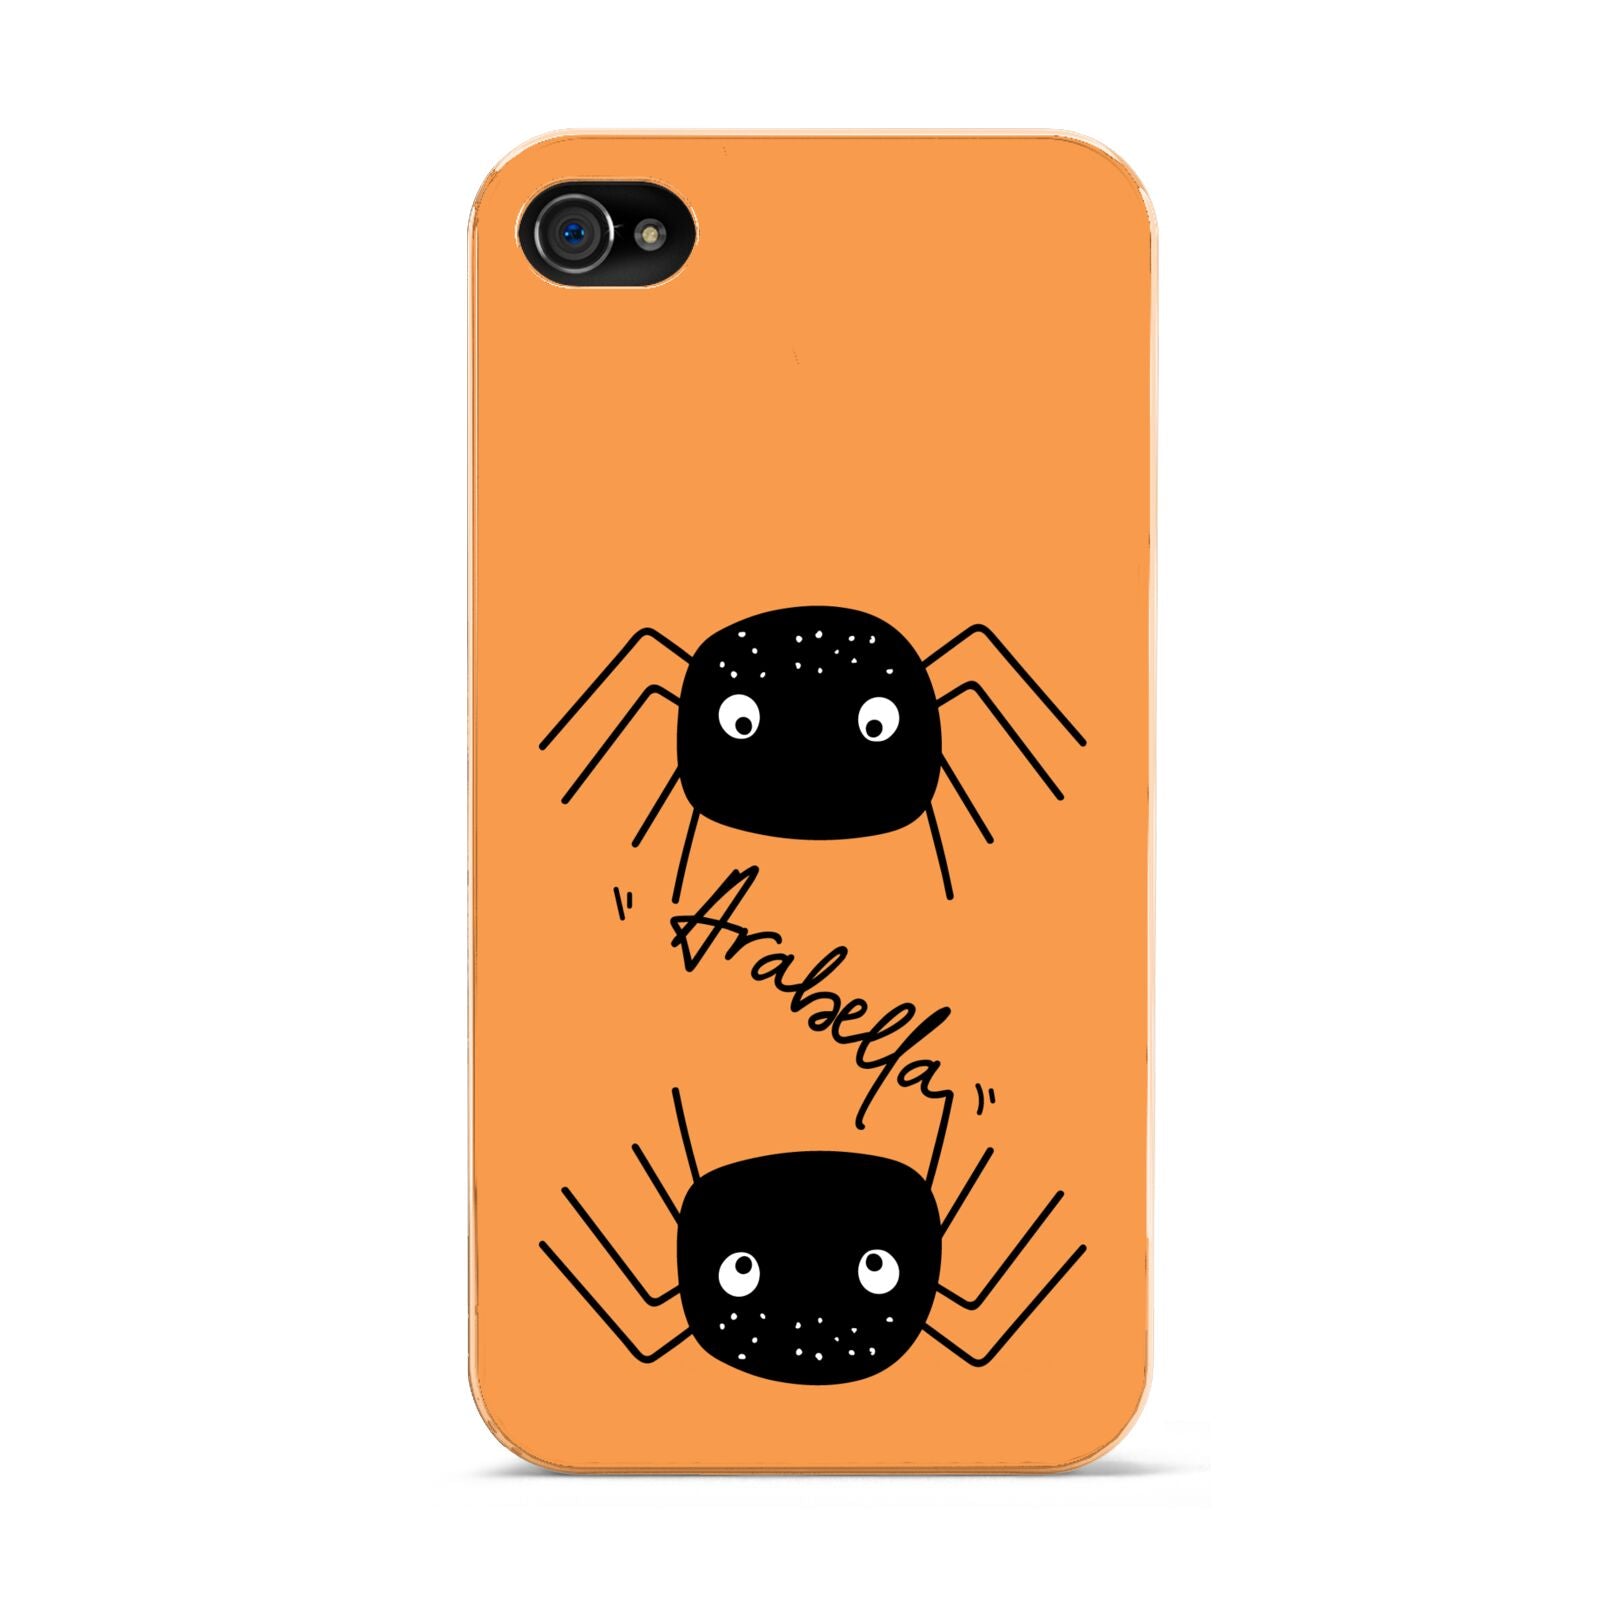 Spider Orange Personalised Apple iPhone 4s Case